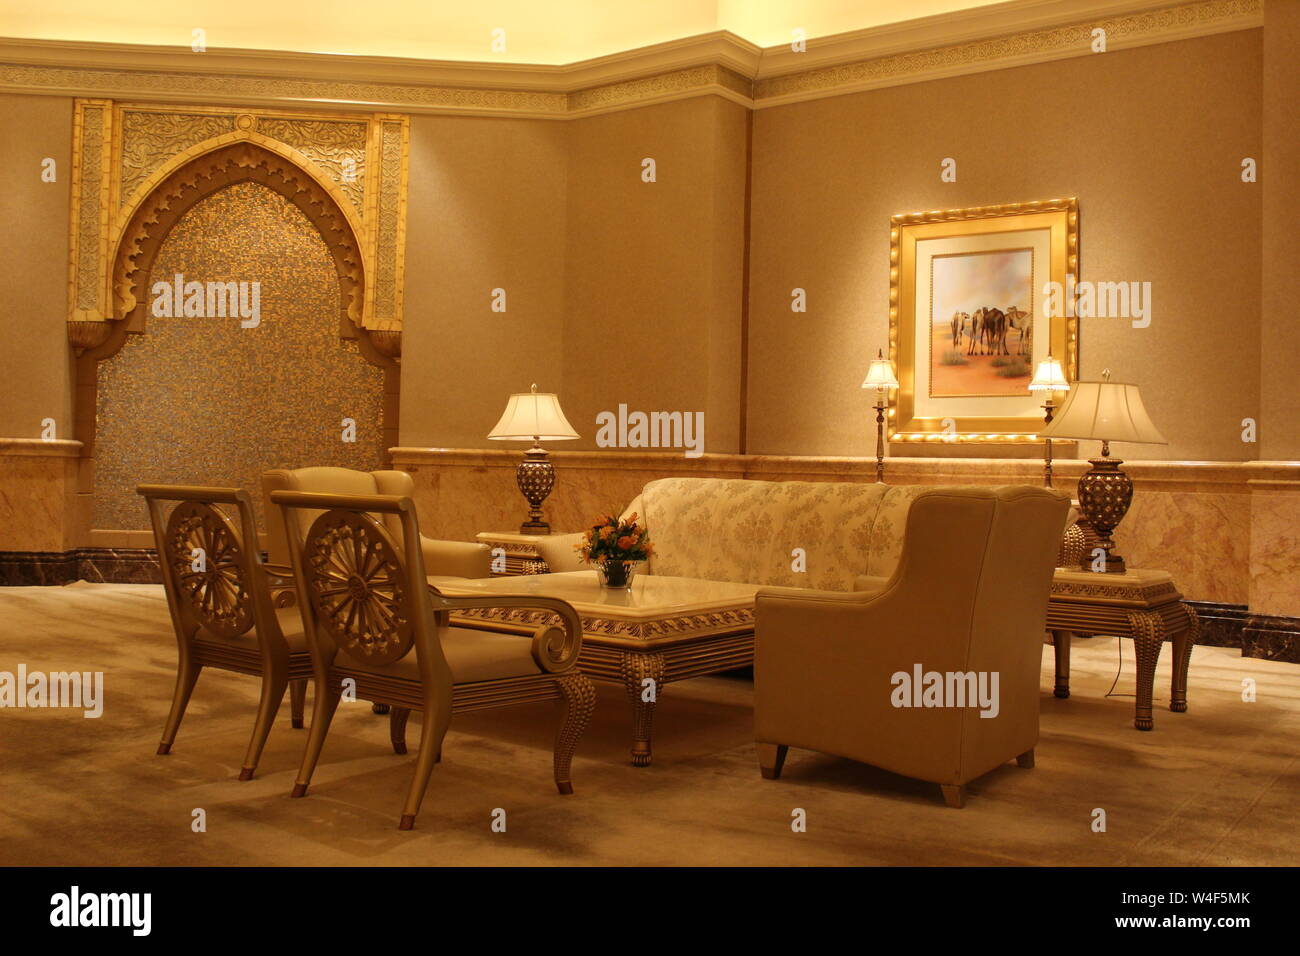 Les décorations et les meubles à l'Intérieur, de l'Emirates Palace Abu Dhabi, UAE Banque D'Images